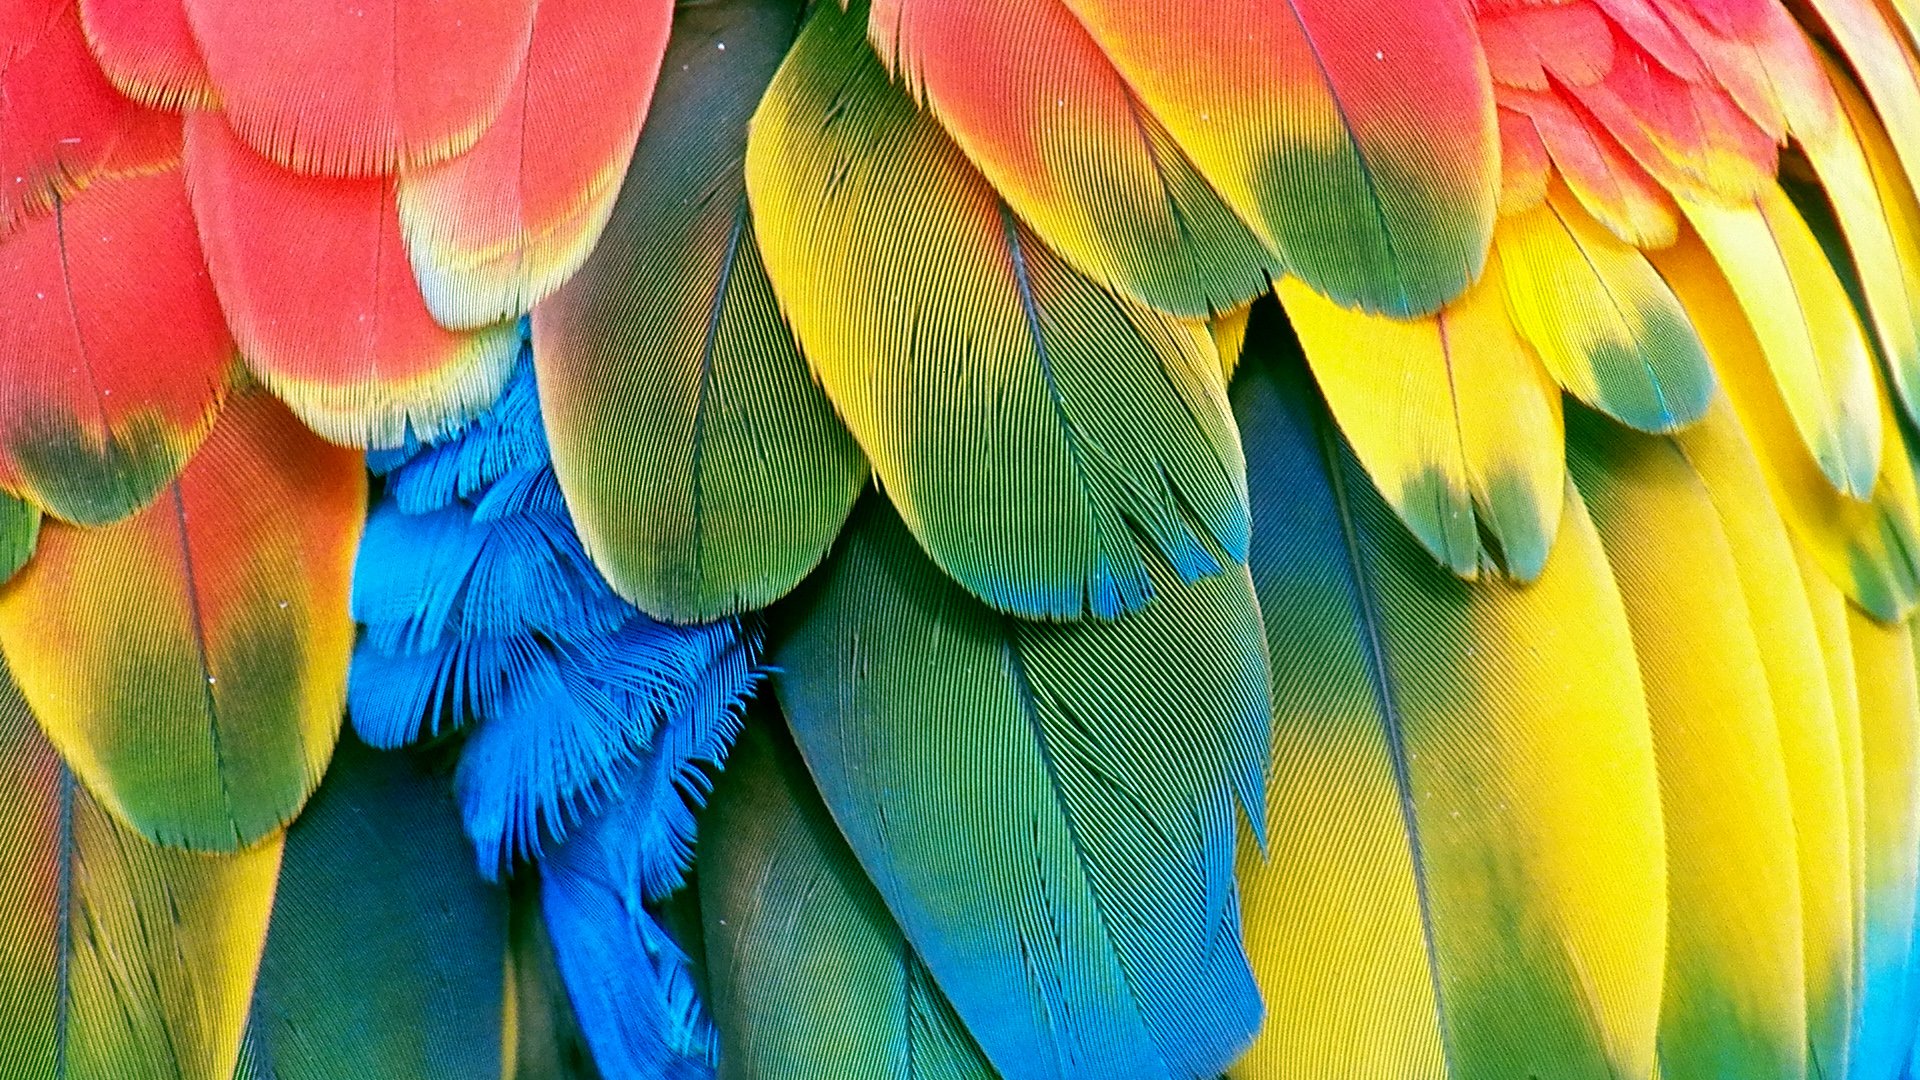 Macaw Parrot Bird Tropical Wallpaper